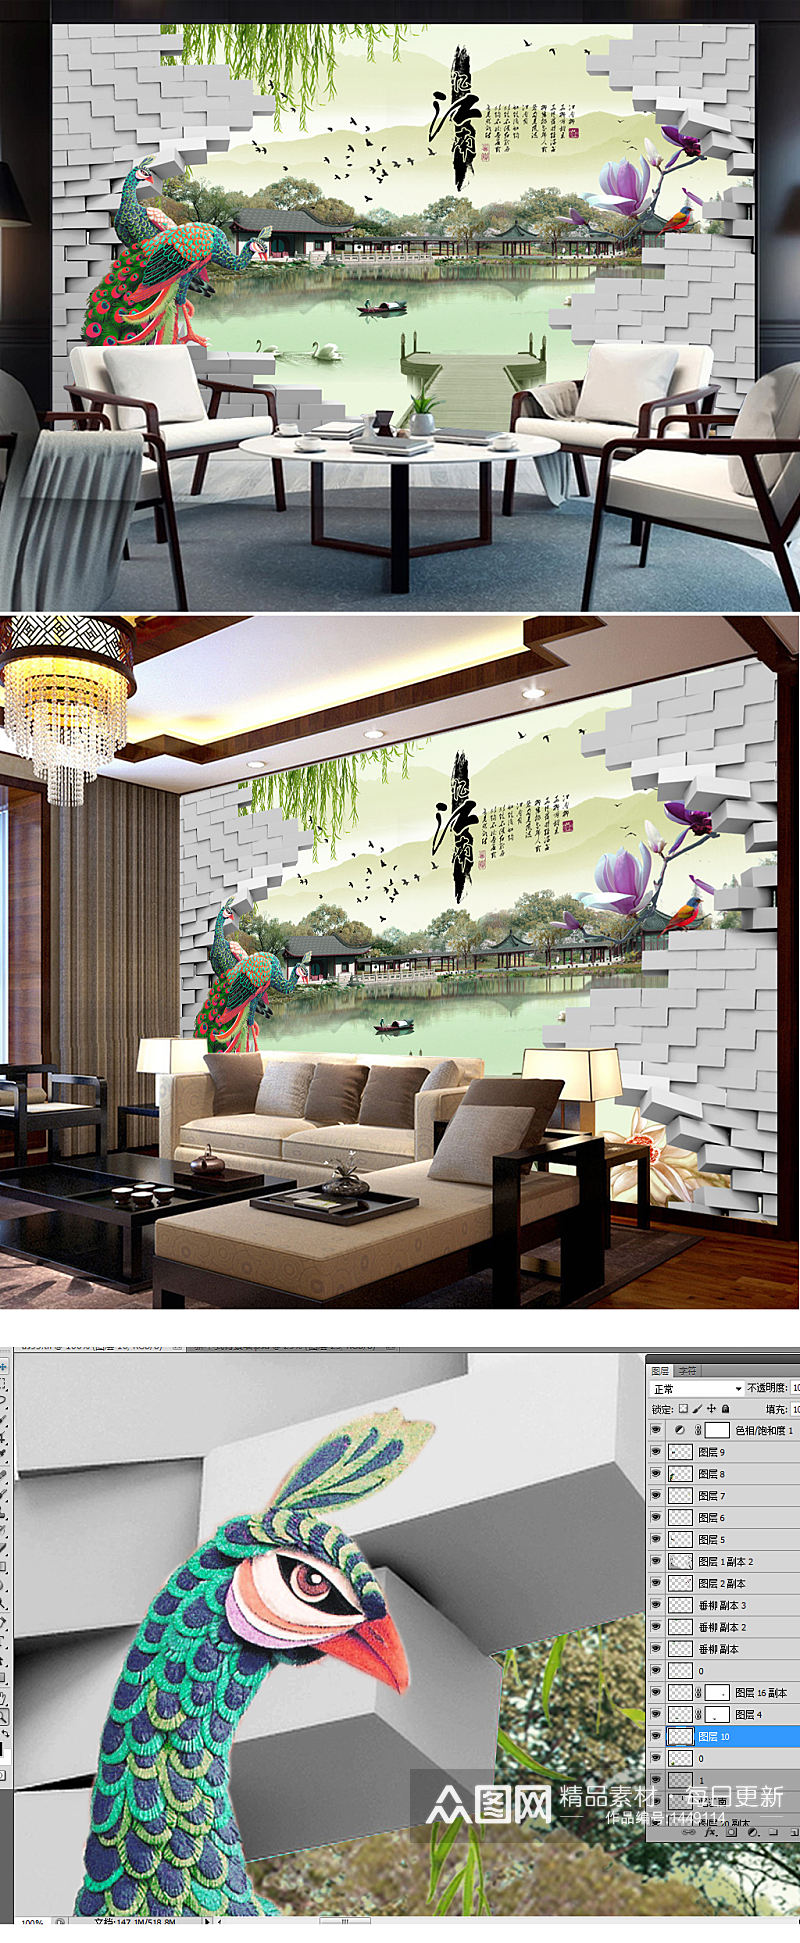 3D立体空间孔雀湖畔美景风景室内背景墙素材